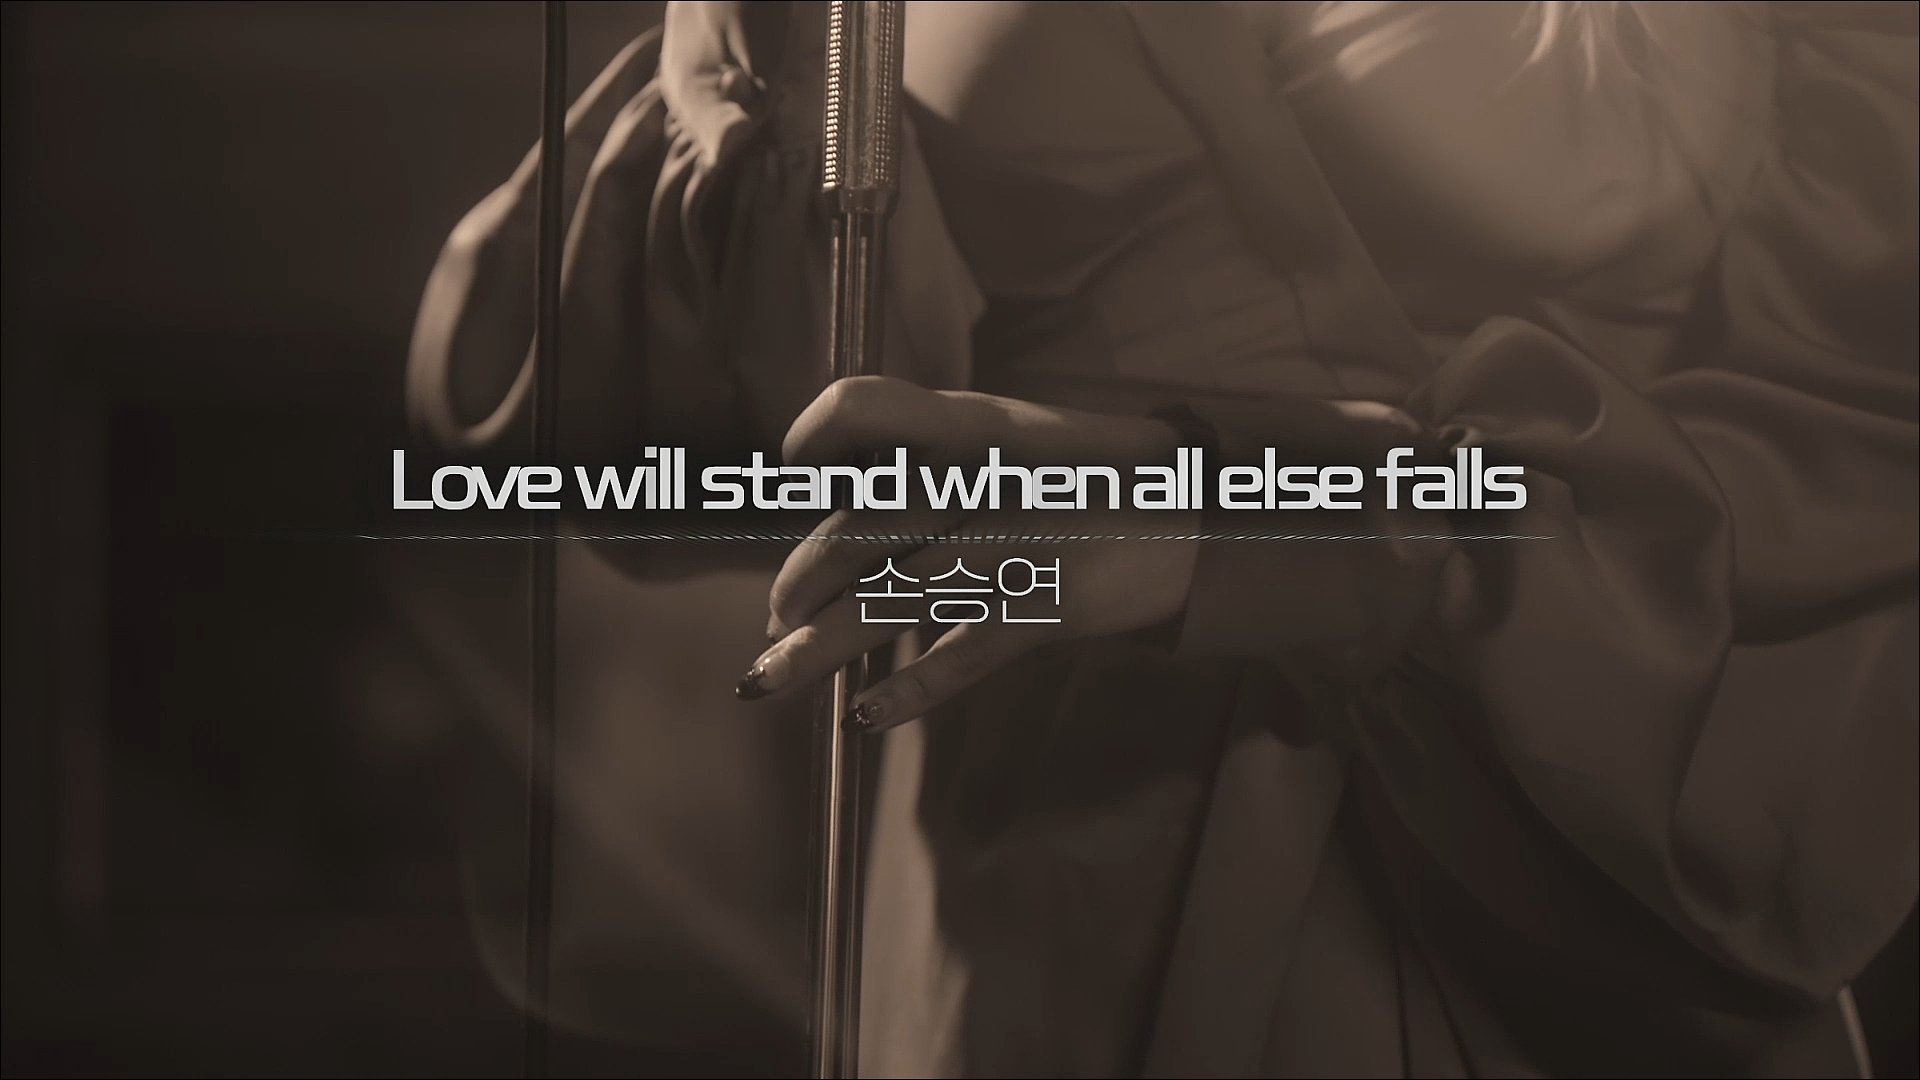 멤피스 - Love will stand when all else falls (손승연)